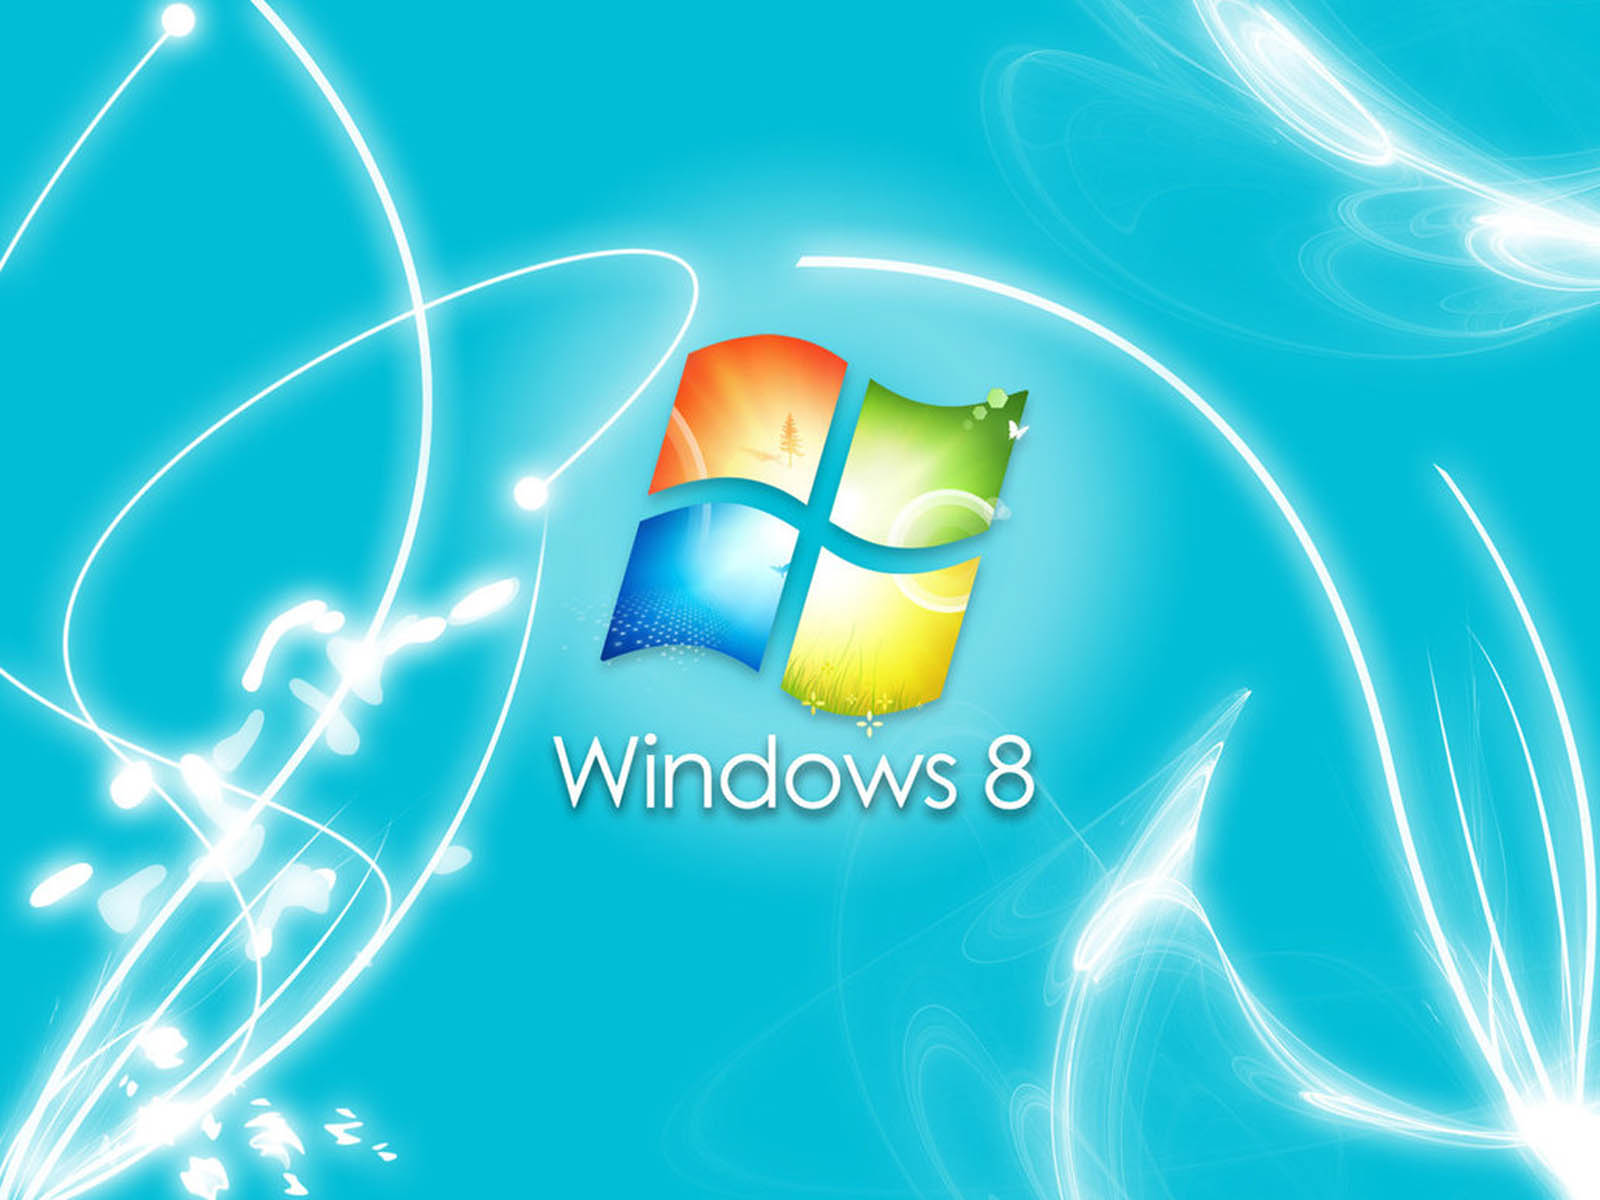 Hình nền đẹp cho Windows 8 Desktop: Cập nhật cho màn hình Desktop với những hình nền vô cùng đẹp mắt. Hình nền Windows 8 Desktop sẽ tạo nên một phong cách mới cho máy tính của bạn. Tại sao không hình thành phong cách của riêng bạn với những hình nền đầy tinh tế, tuyệt đẹp nhất?